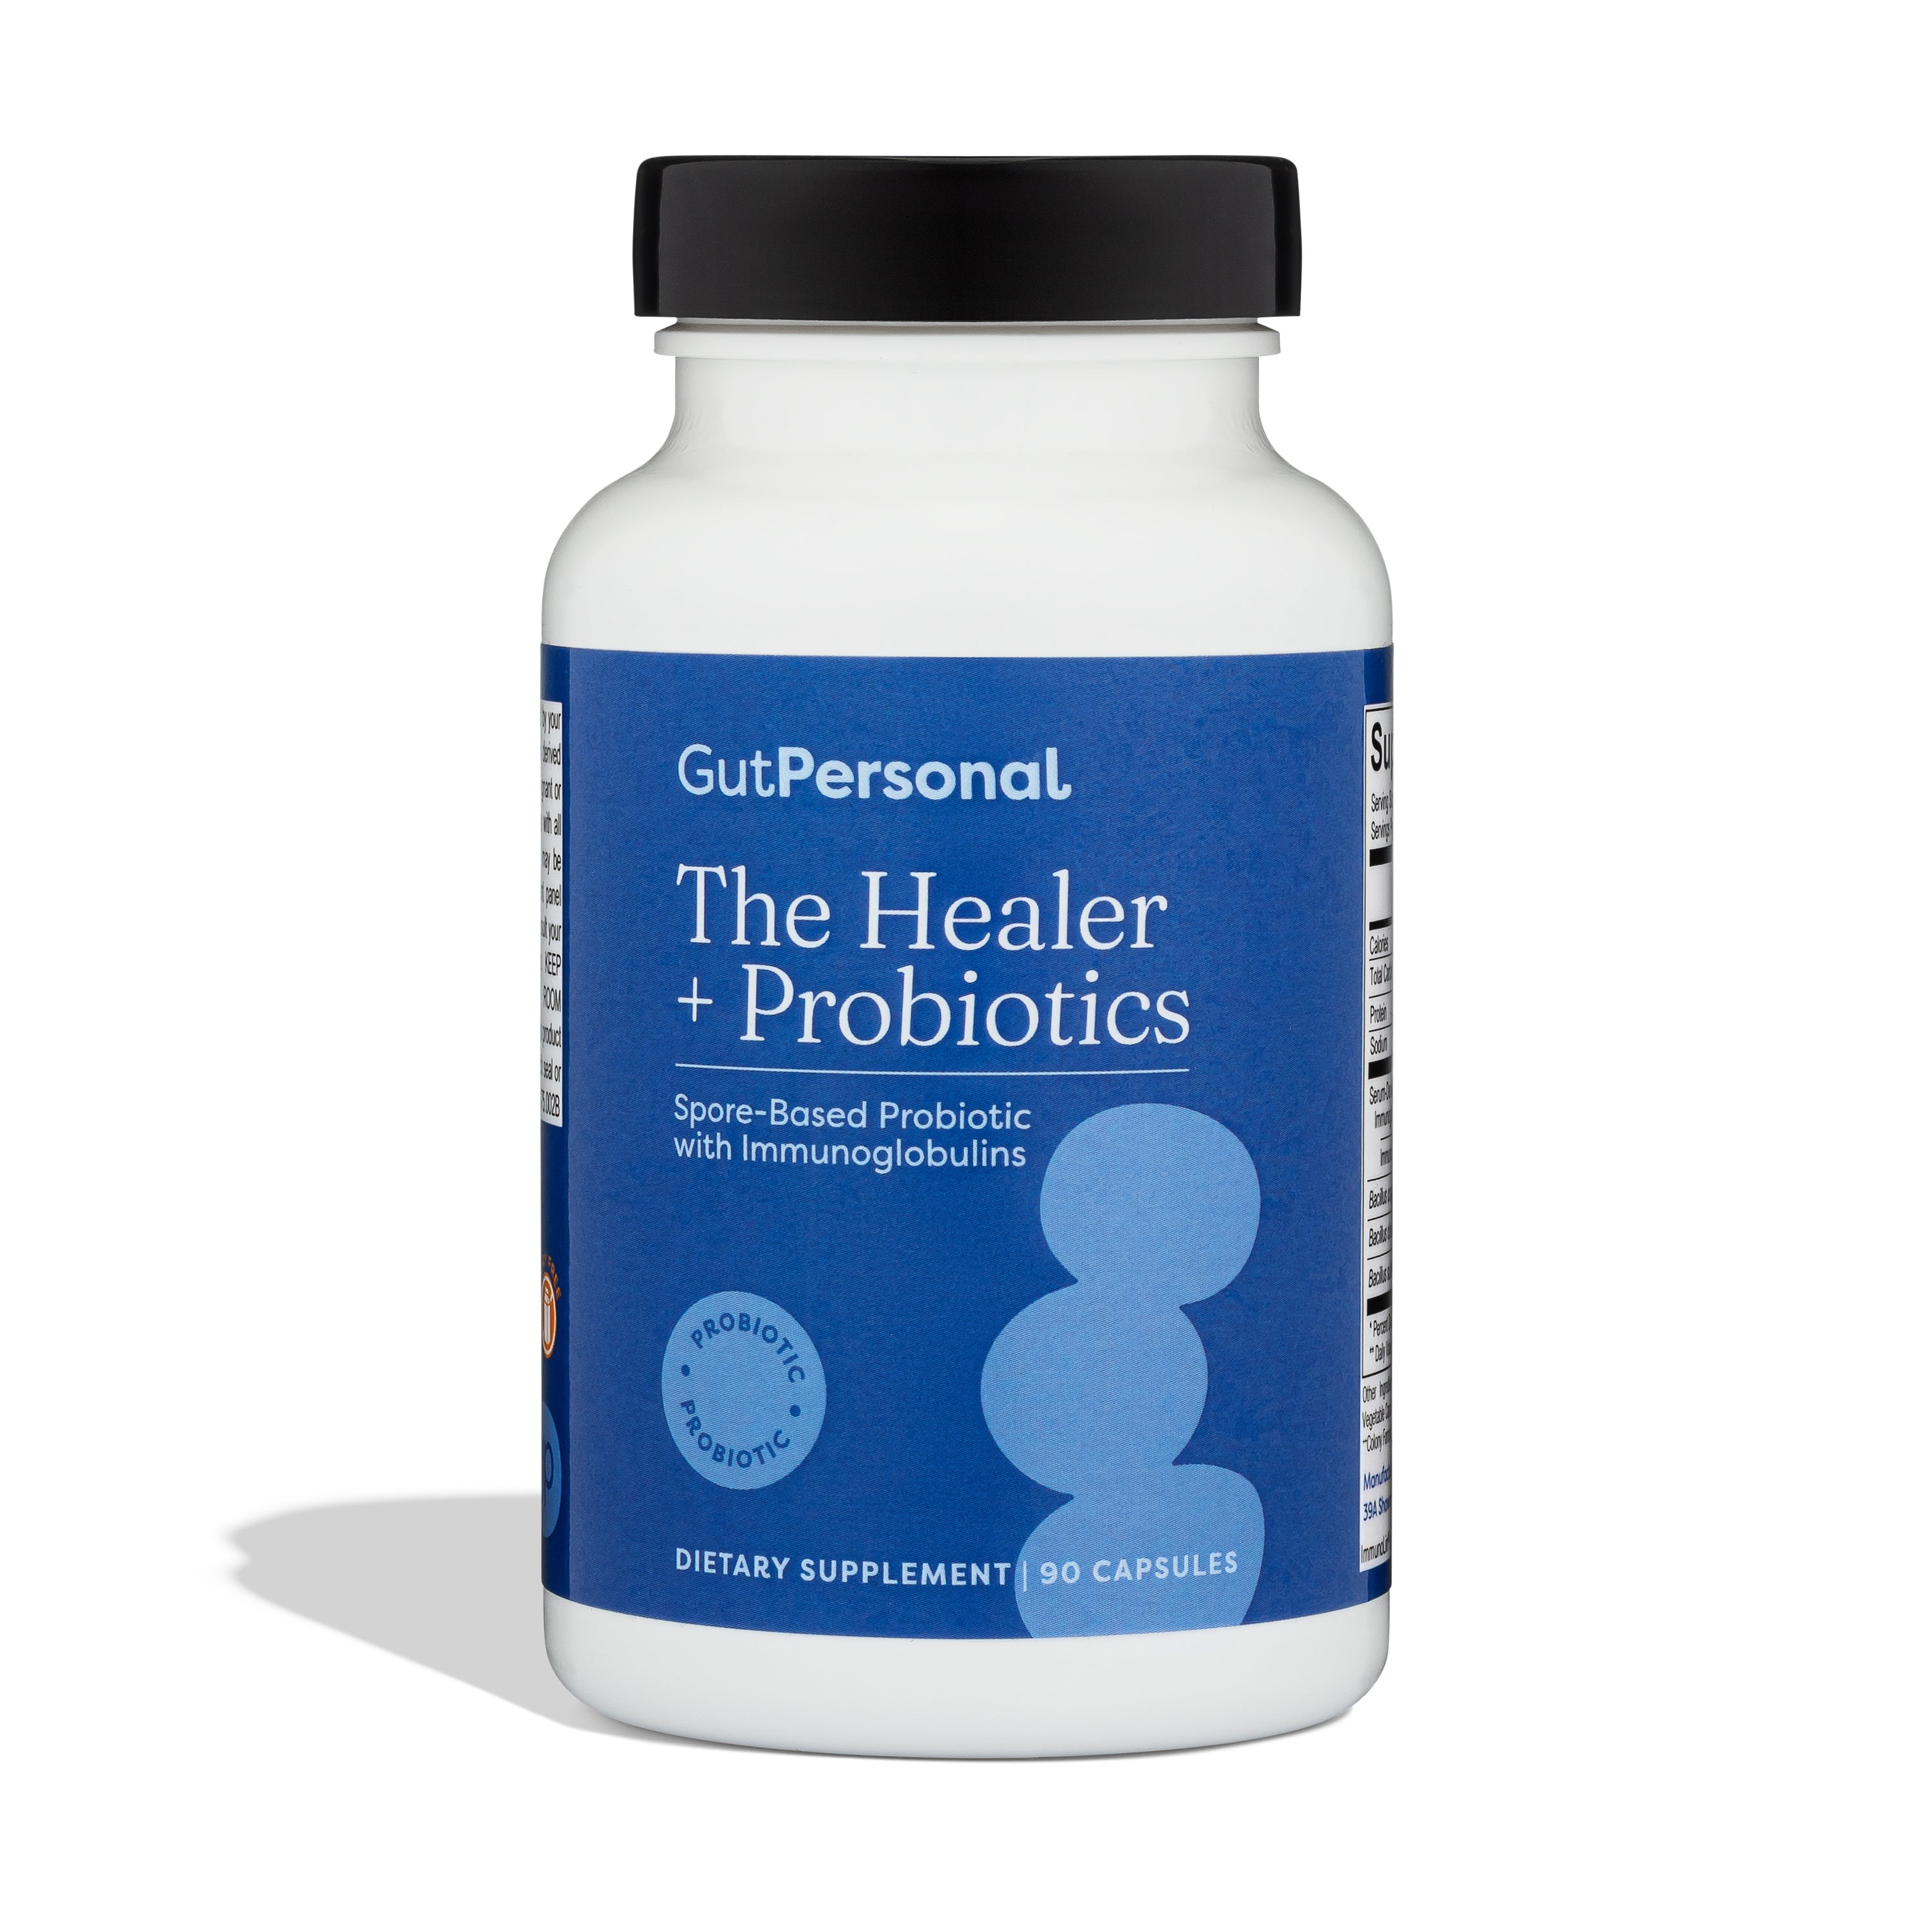 The Healer + Probiotics